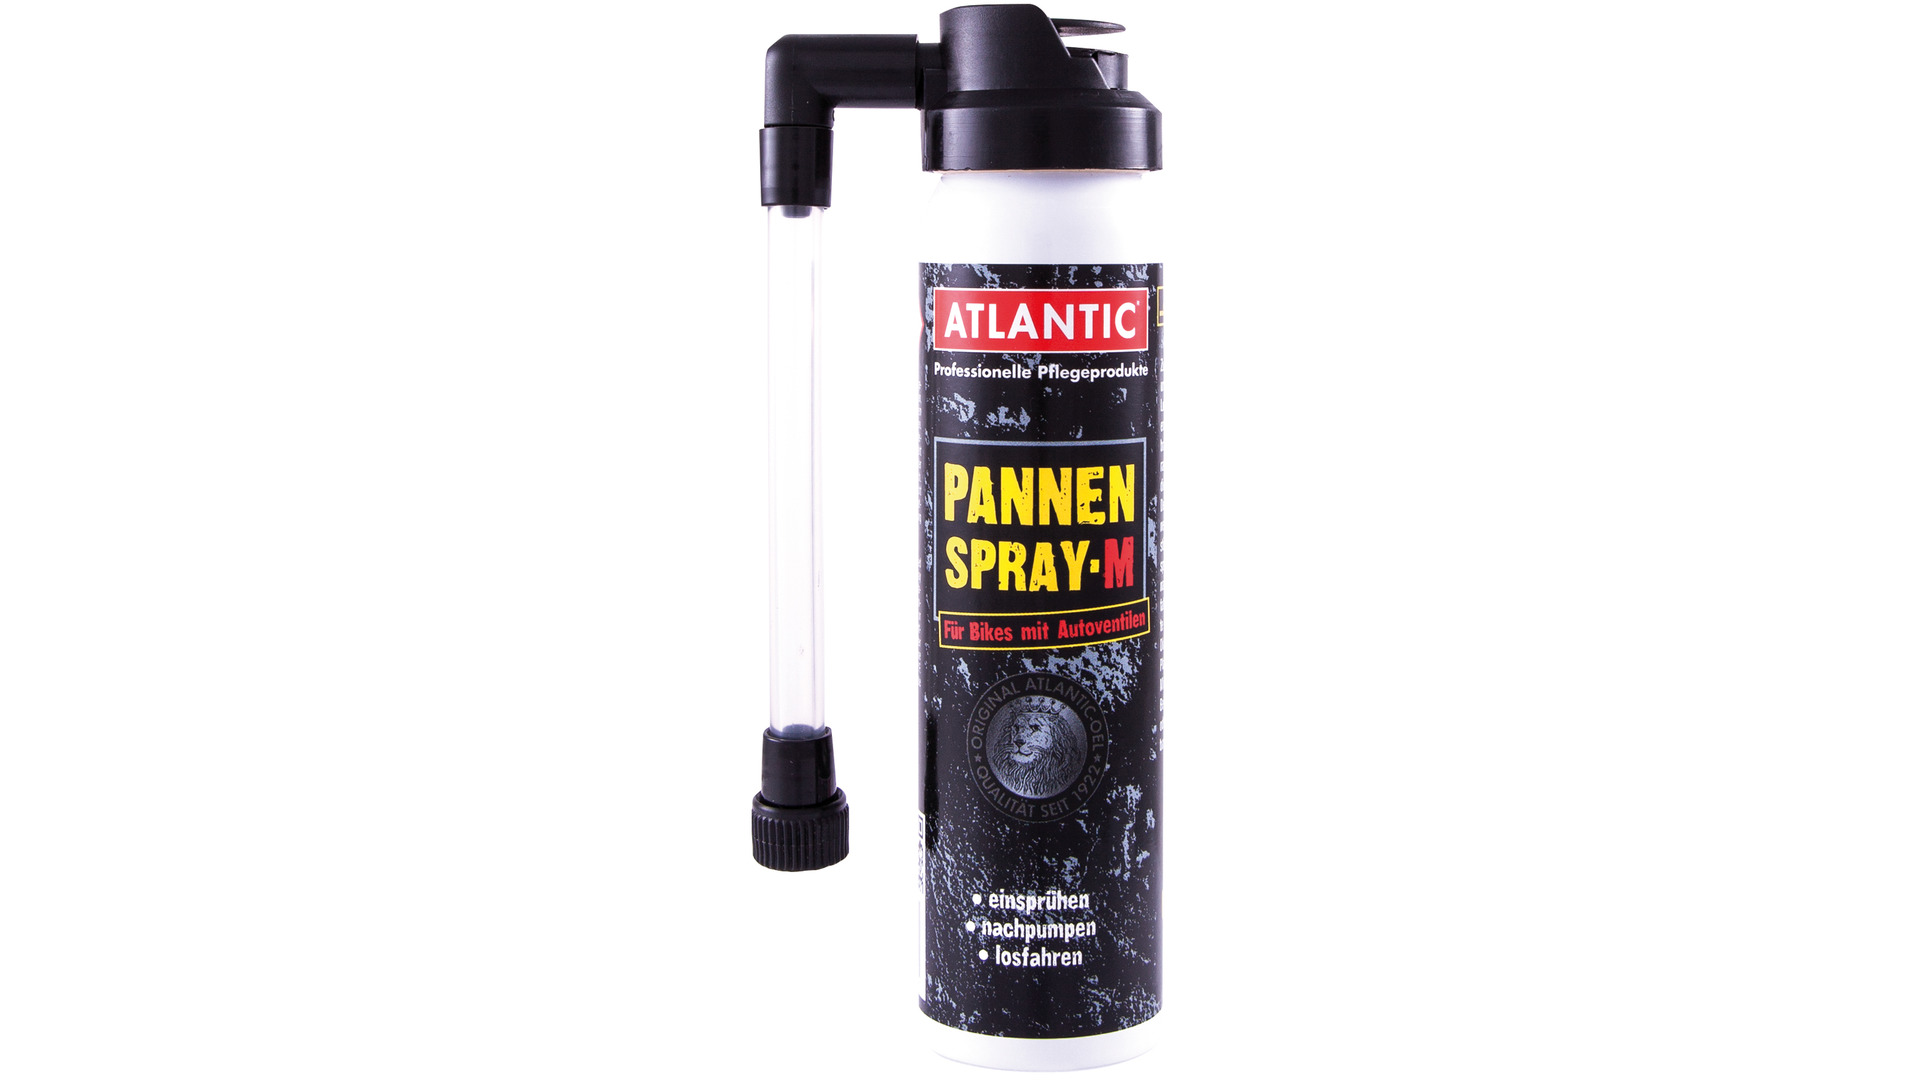 Atlantic Pannenspray M für Autoventil, Spraydose 75 ml - Bild 1